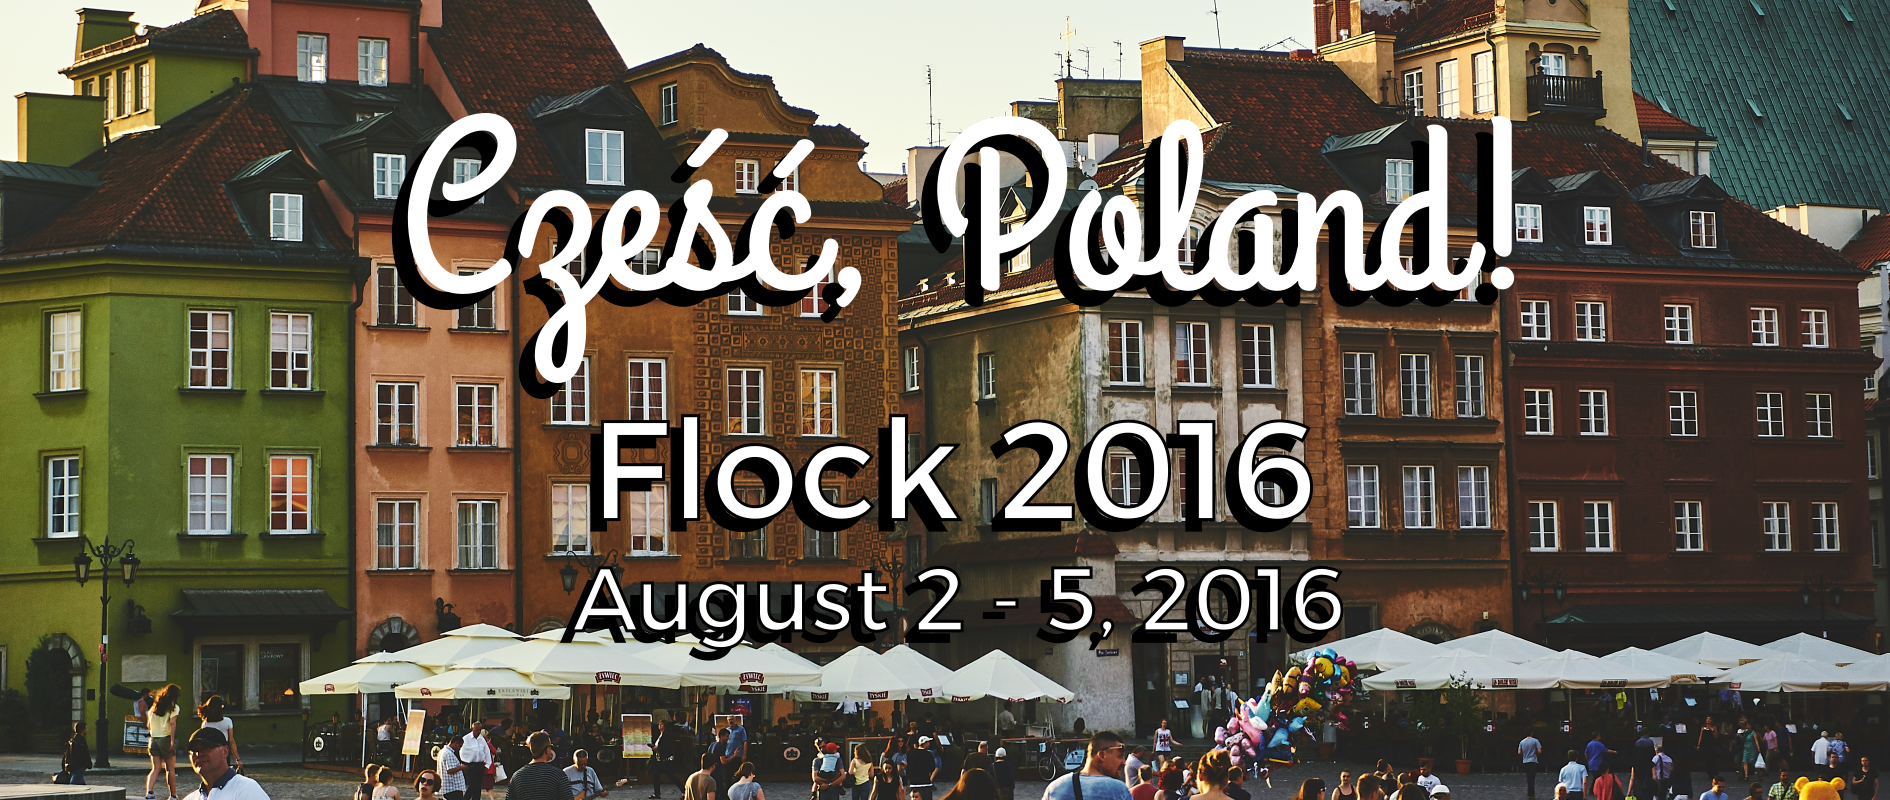 Hello Poland! Fedora Flock 2016